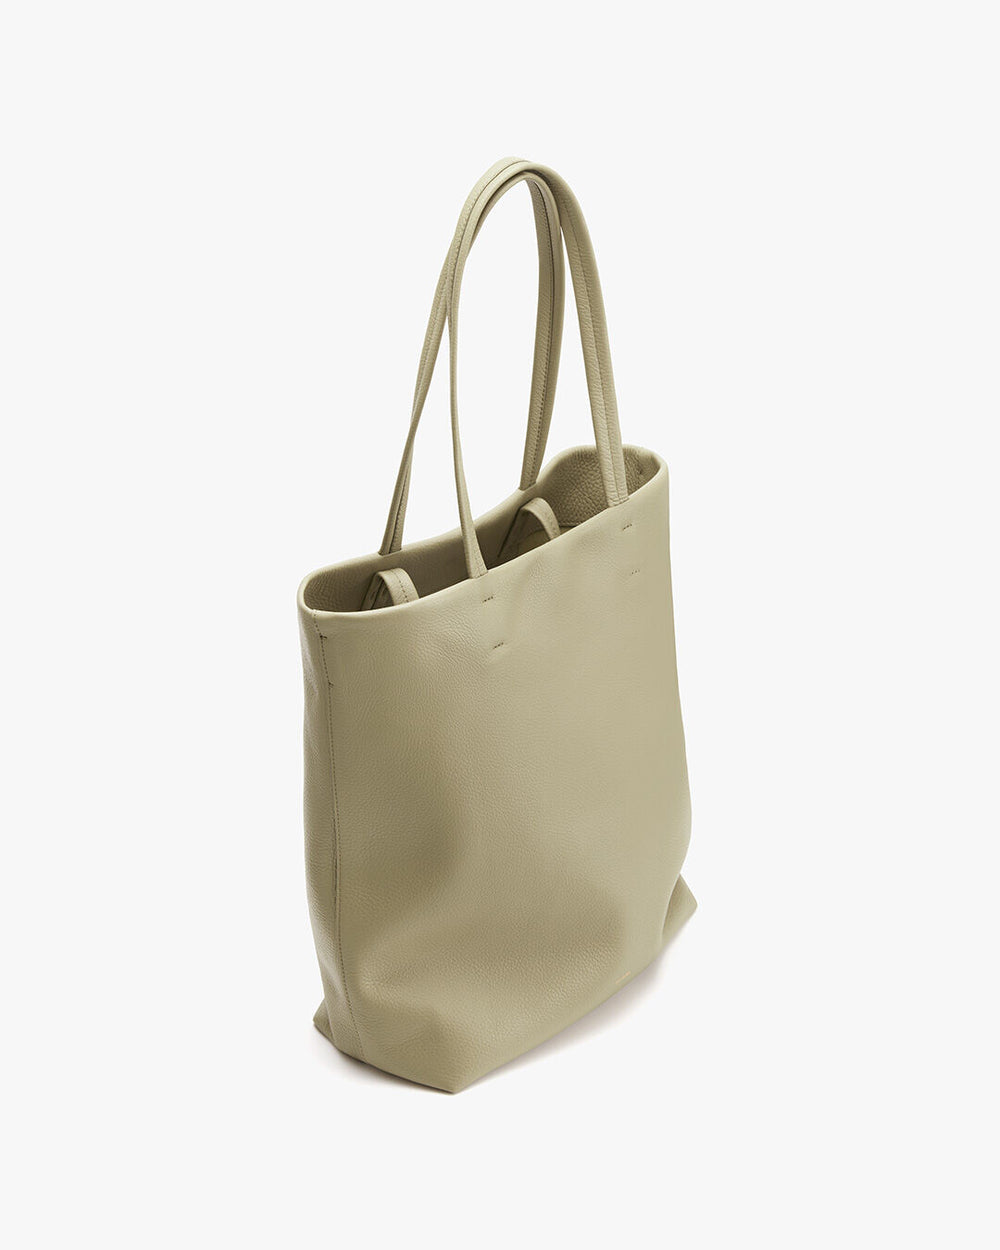 Cuyana Tall Easy Tote Bag - Terracotta